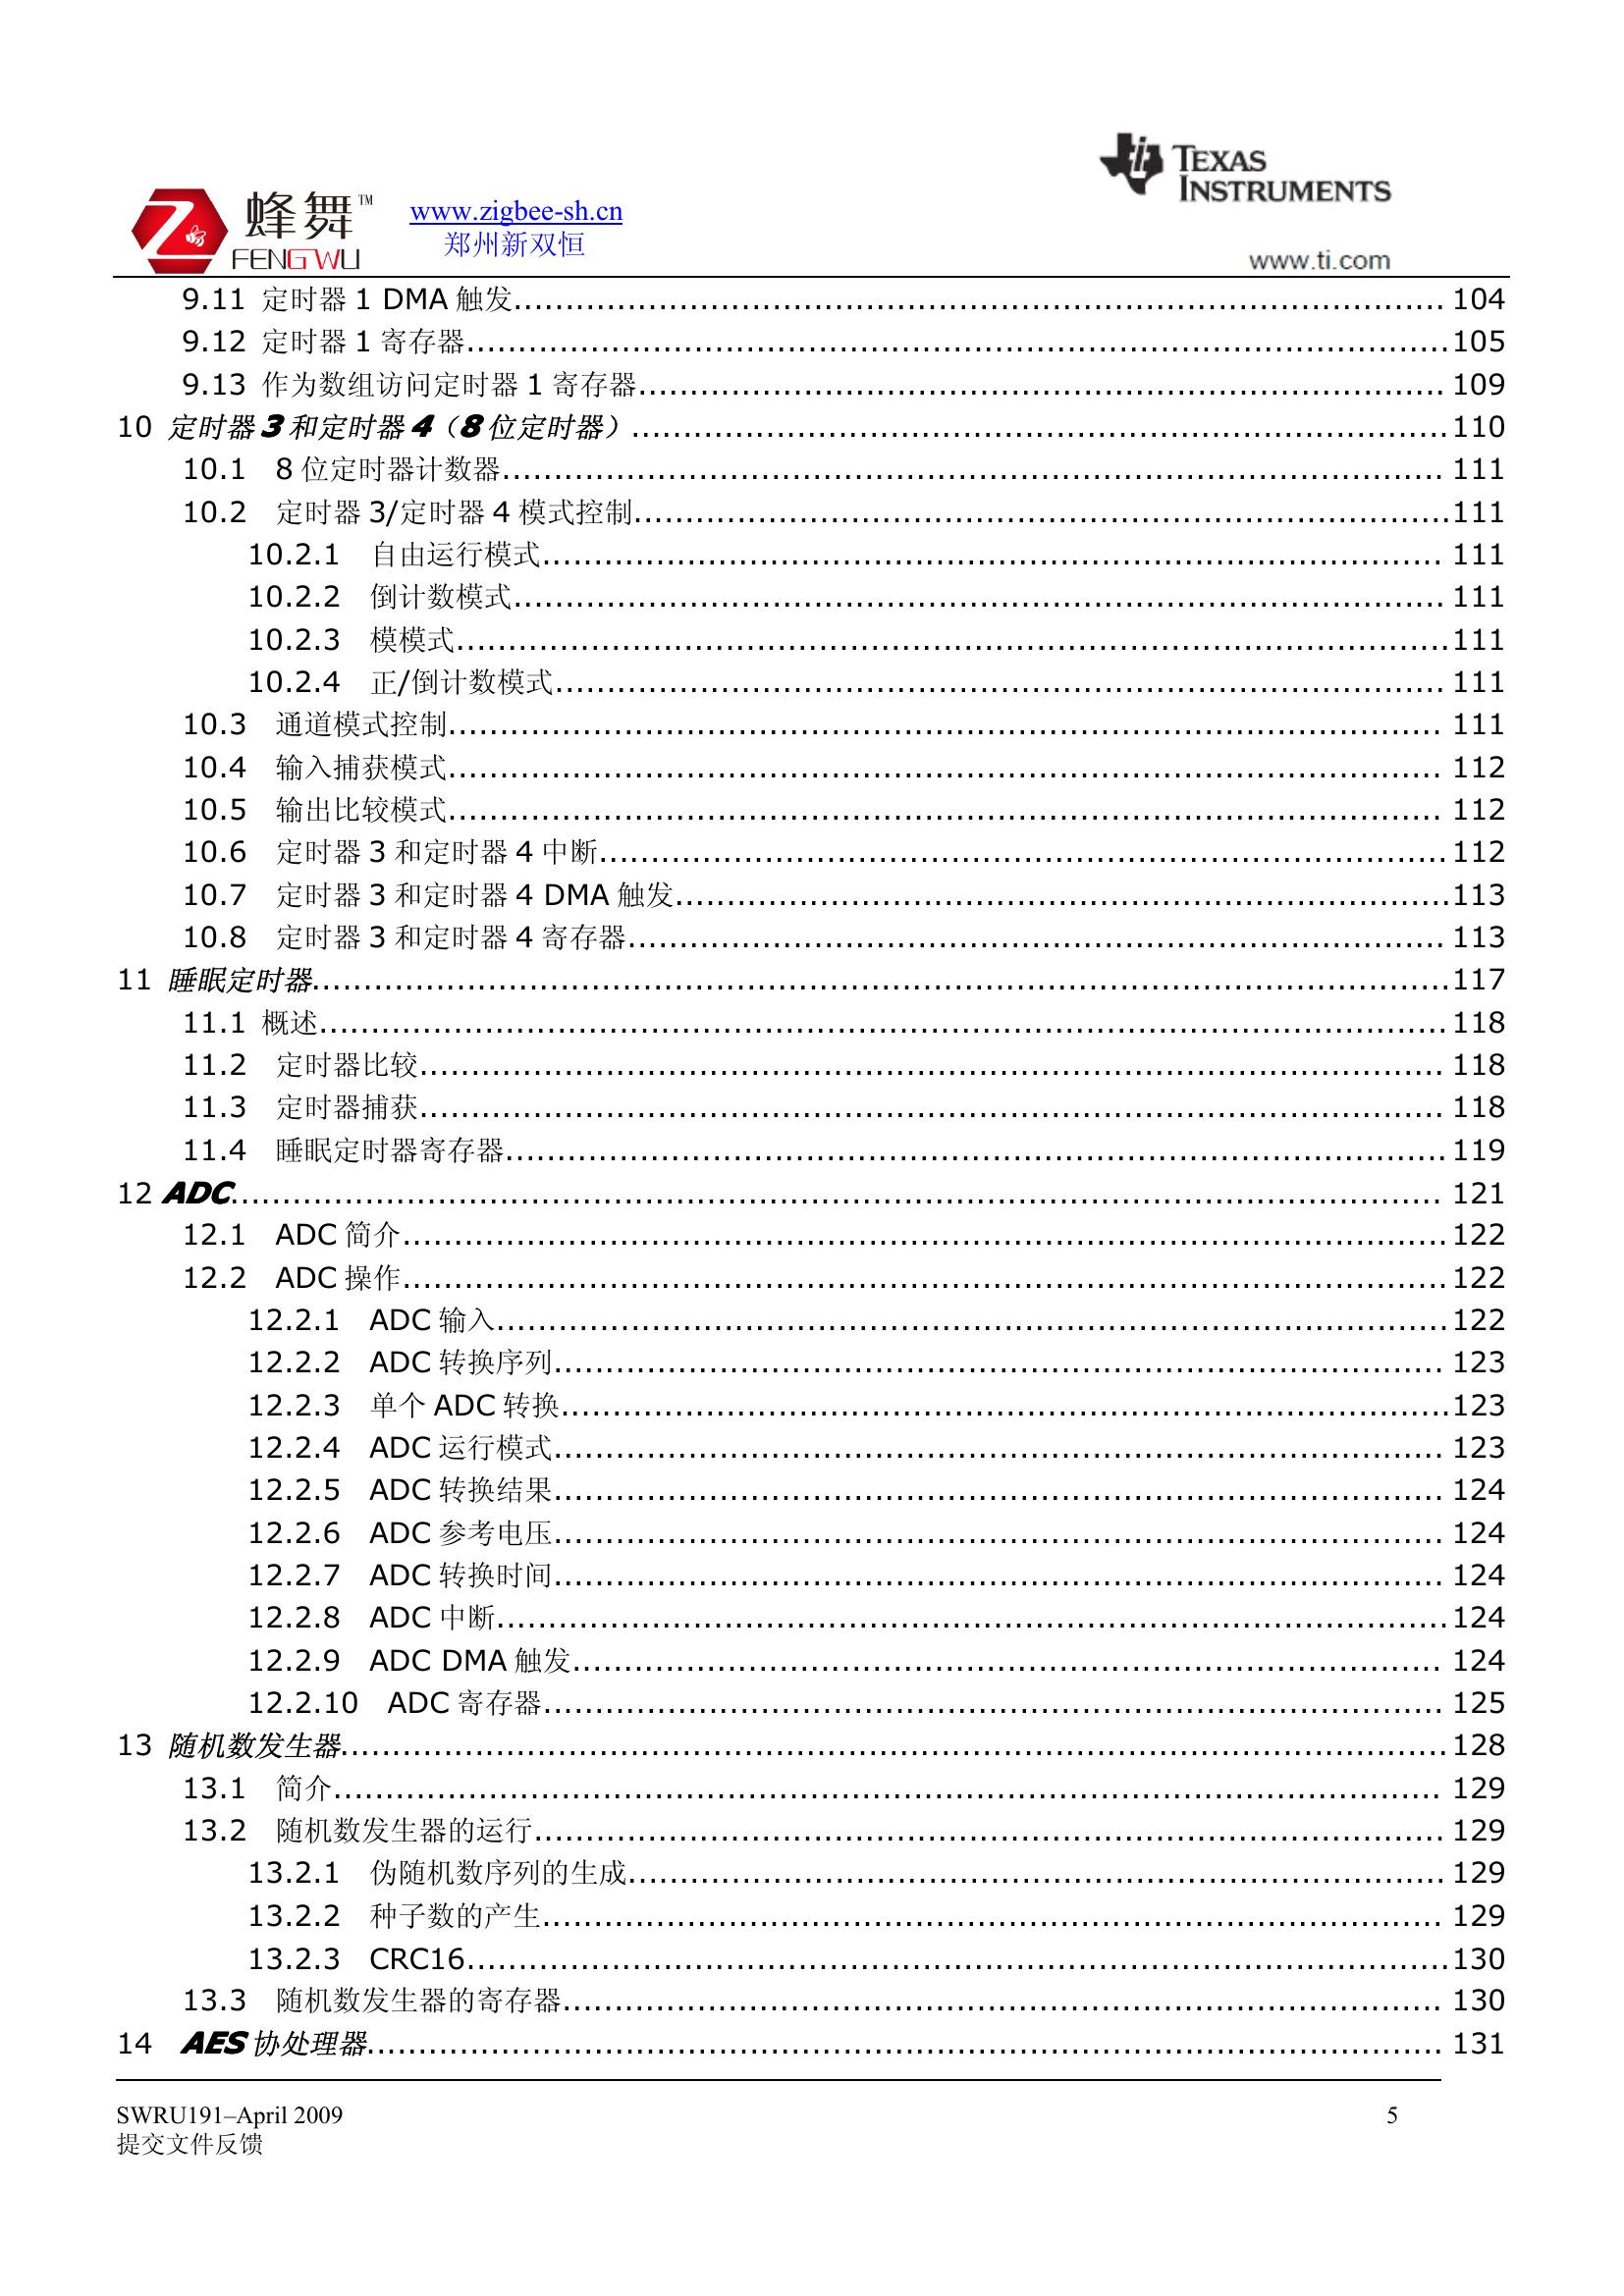 CC253X用户指南（中）.pdf-第5页.png